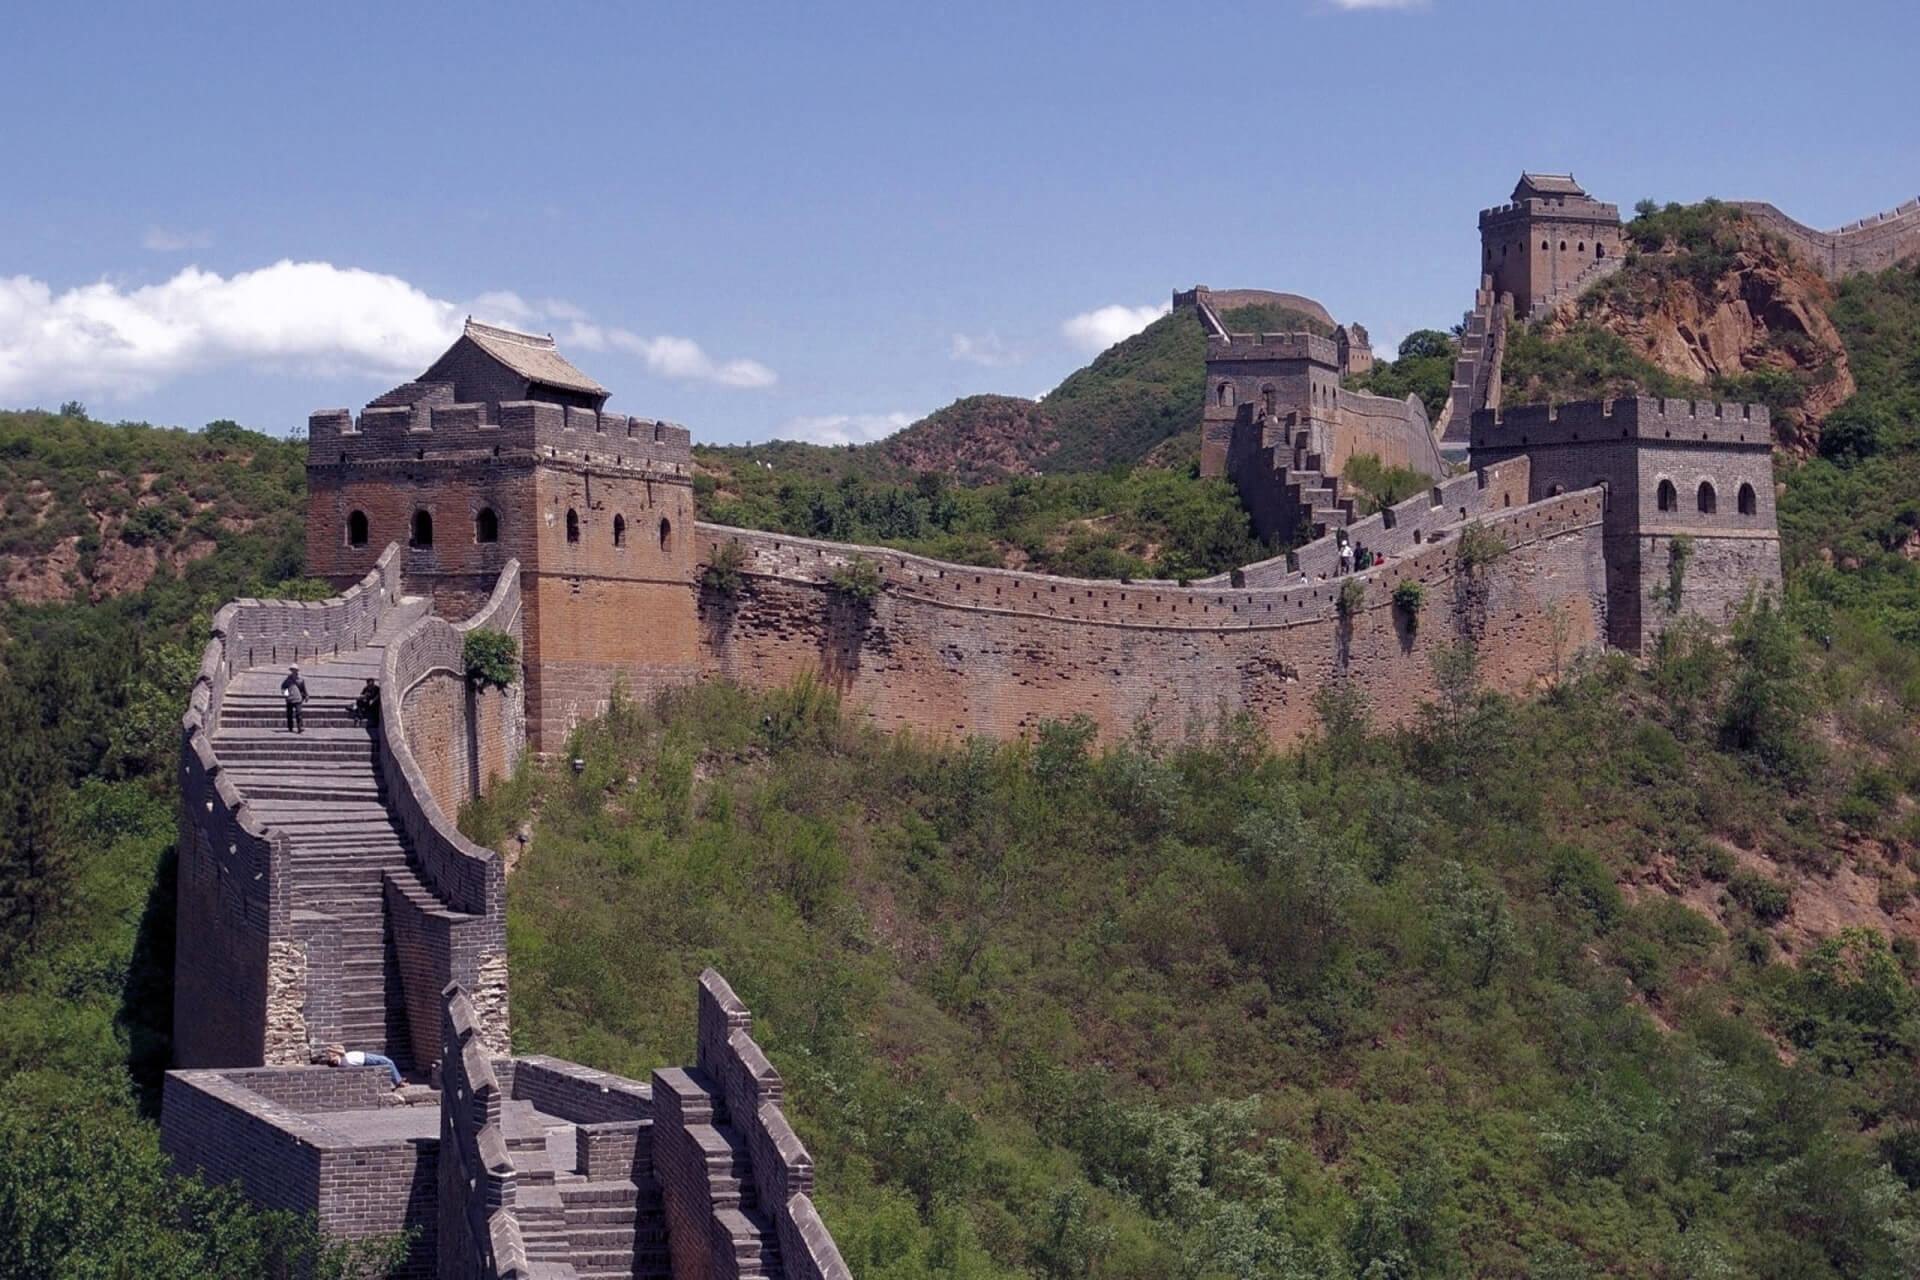 Great Wall of China, China